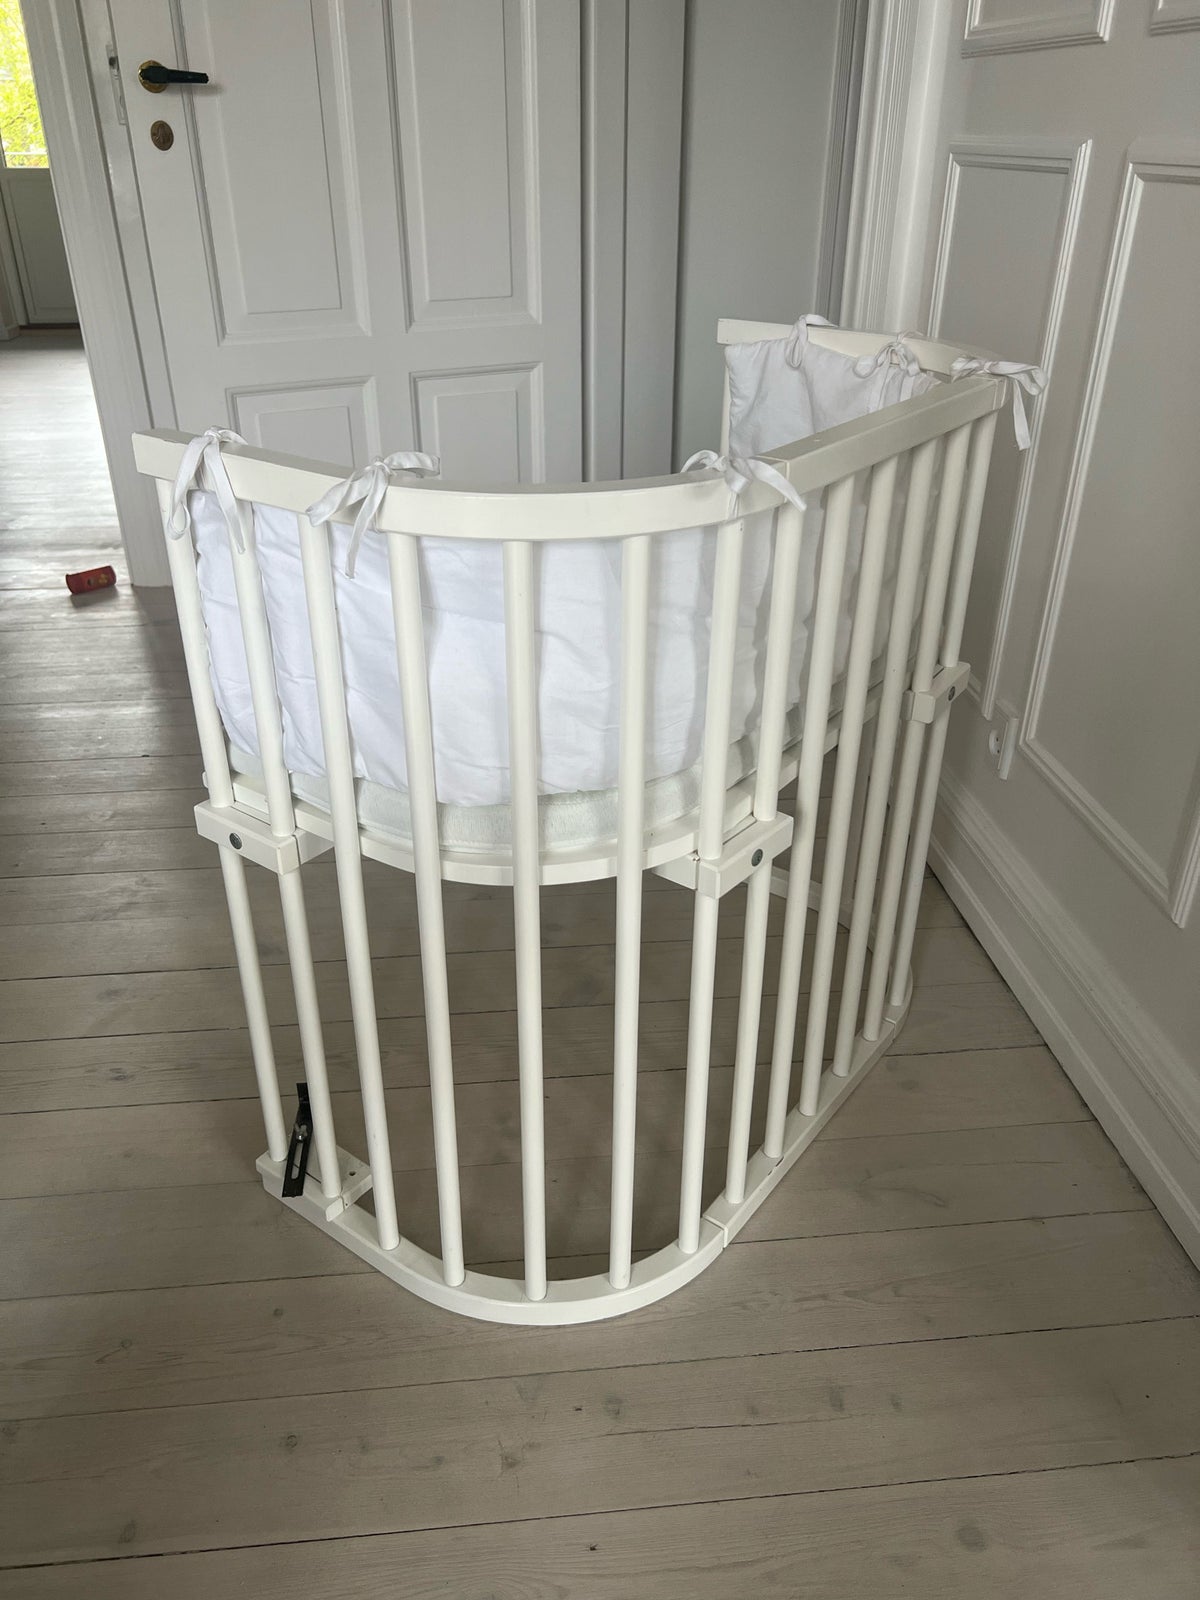 Babyseng, Babybay bedside crib, b: 46 cm l: 88 cm